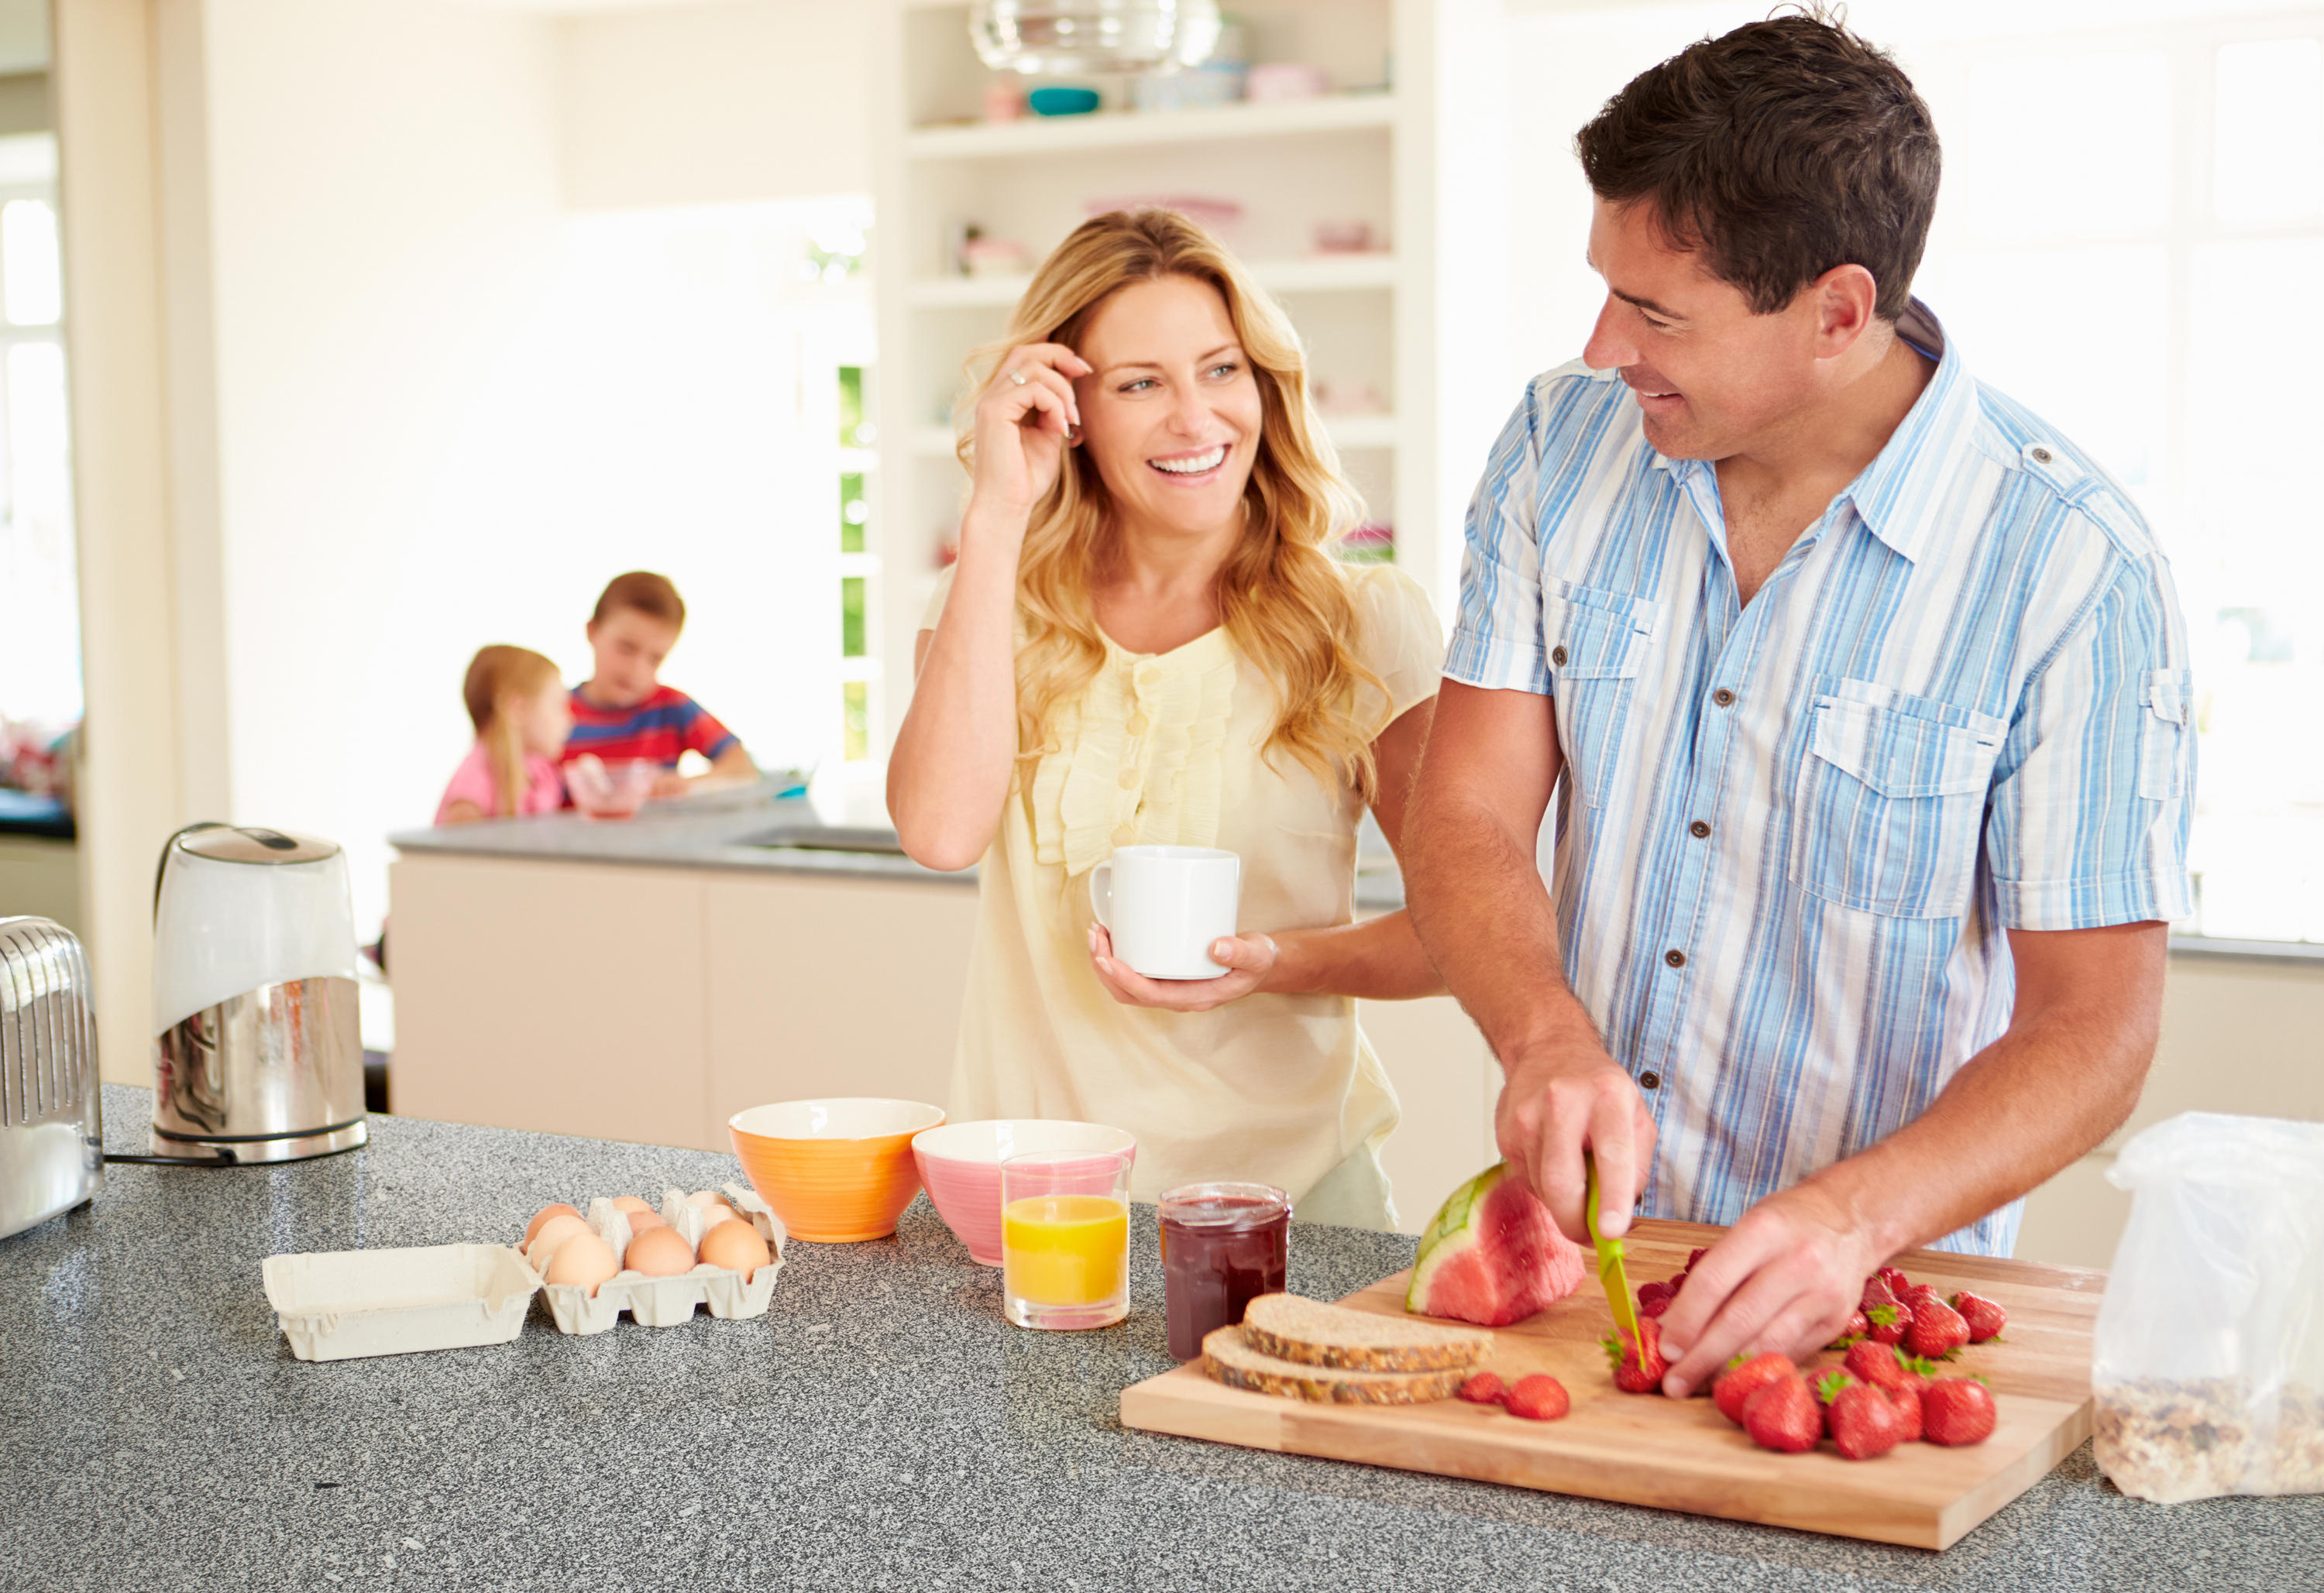 Husband made wife. Семья на кухне. Мужчина и женщина завтракают. Счастливая семья на кухне. Семья кухня обед.